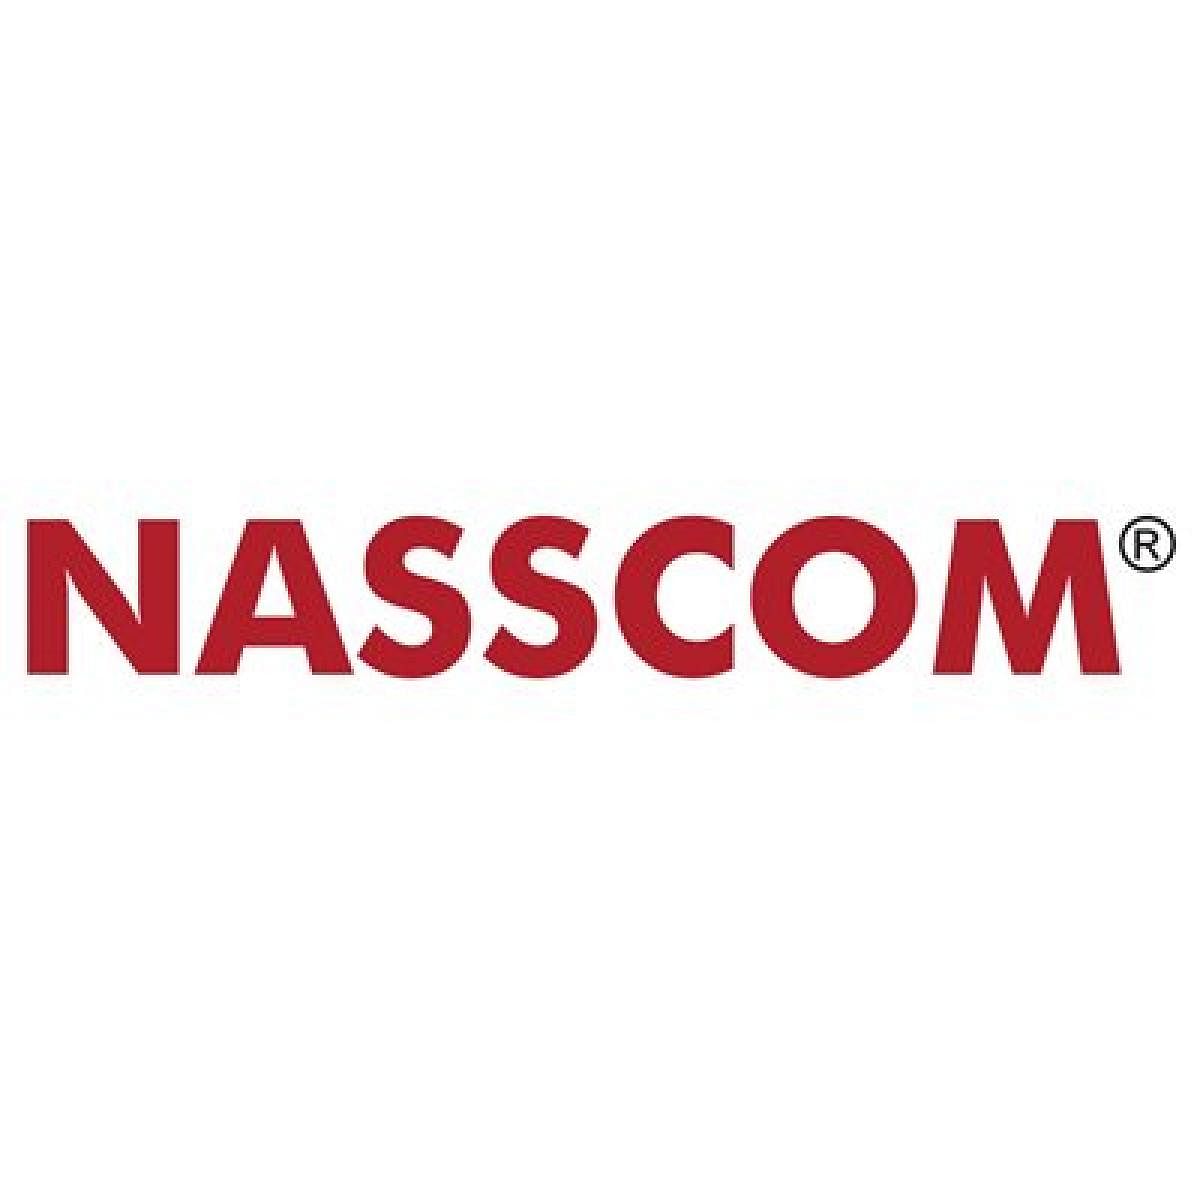 Nasscom logo (File Photo)